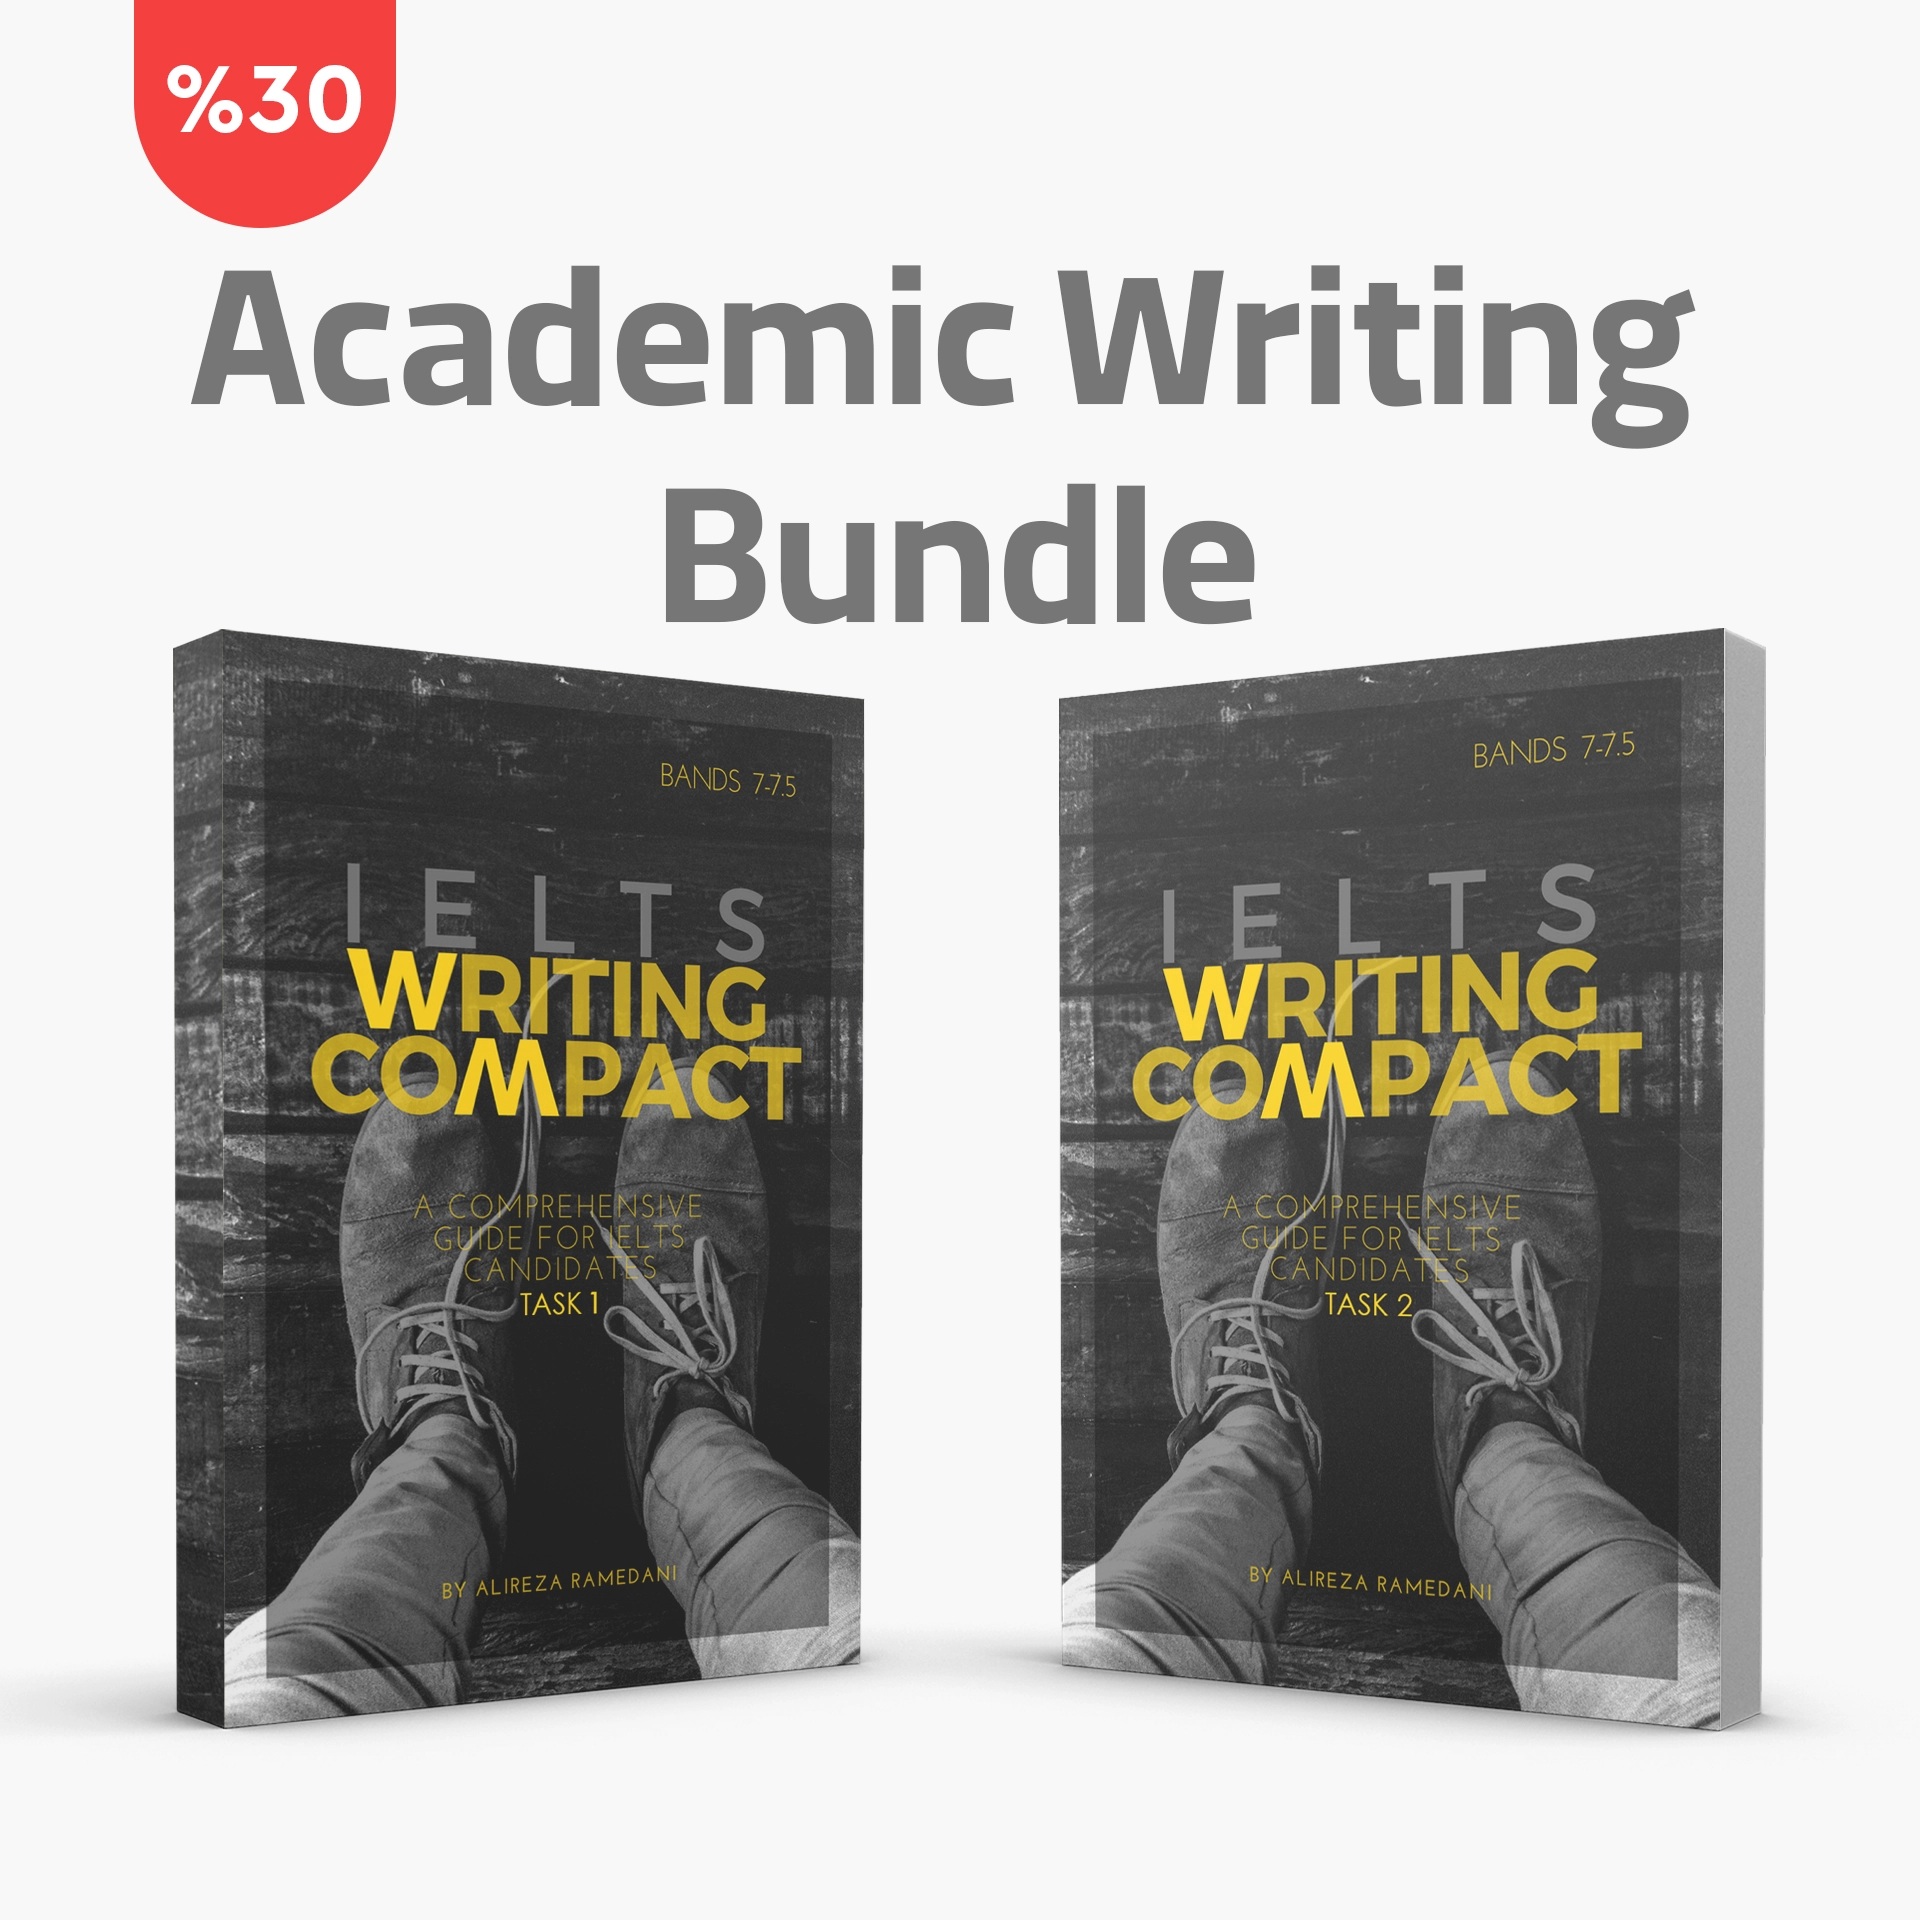 Academic Writing Bundle